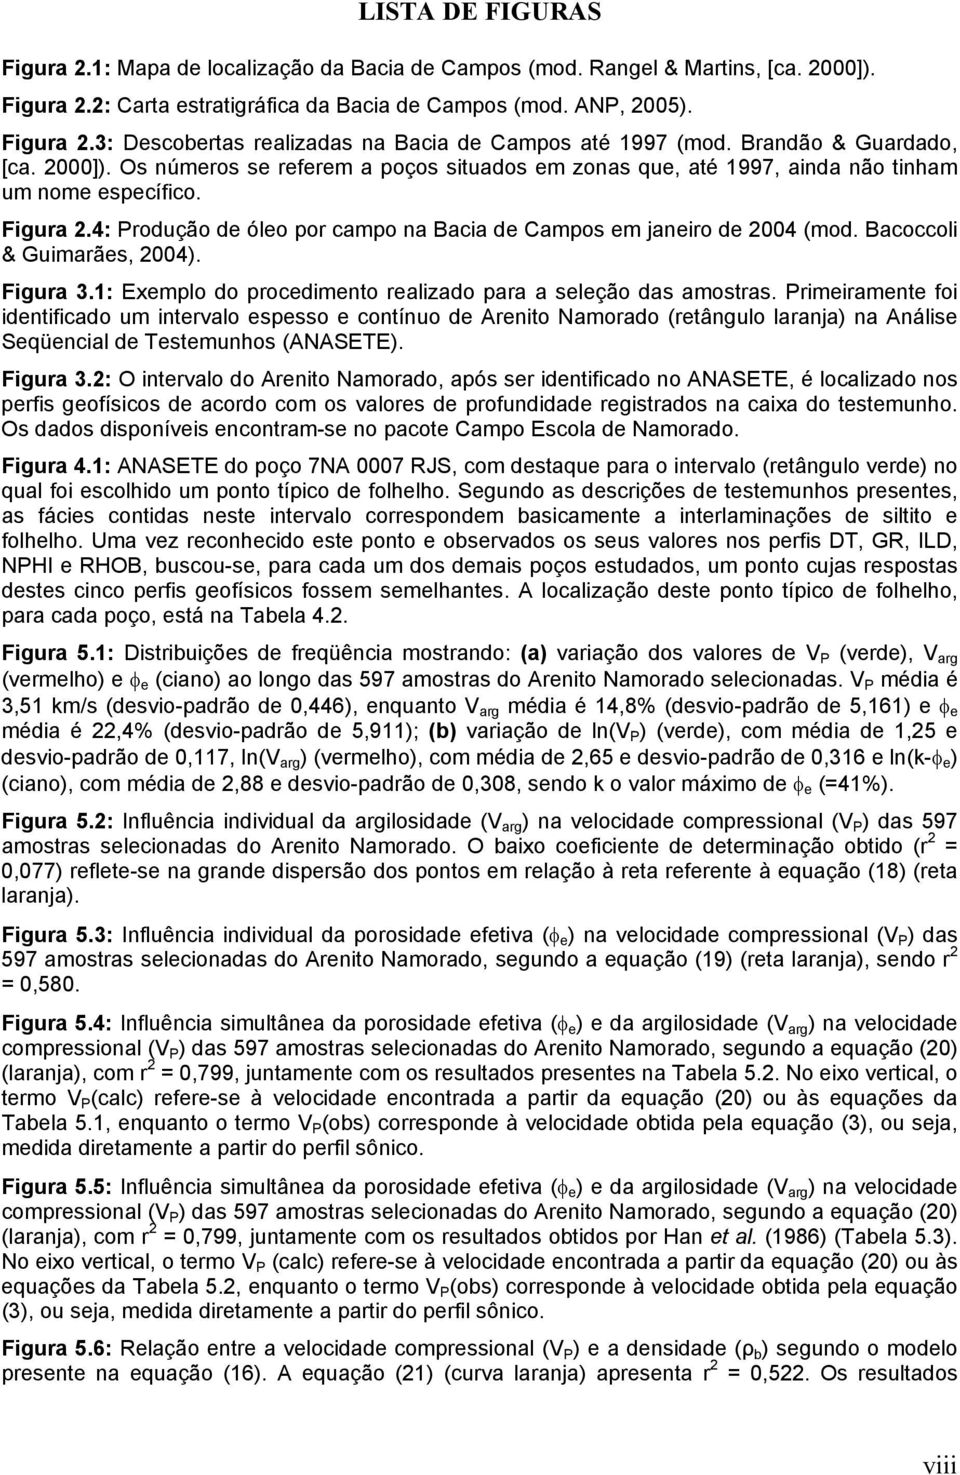 4: Produção de óleo por campo na Bacia de Campos em janeiro de 2004 (mod. Bacoccoli & Guimarães, 2004). Figura 3.1: Exemplo do procedimento realizado para a seleção das amostras.